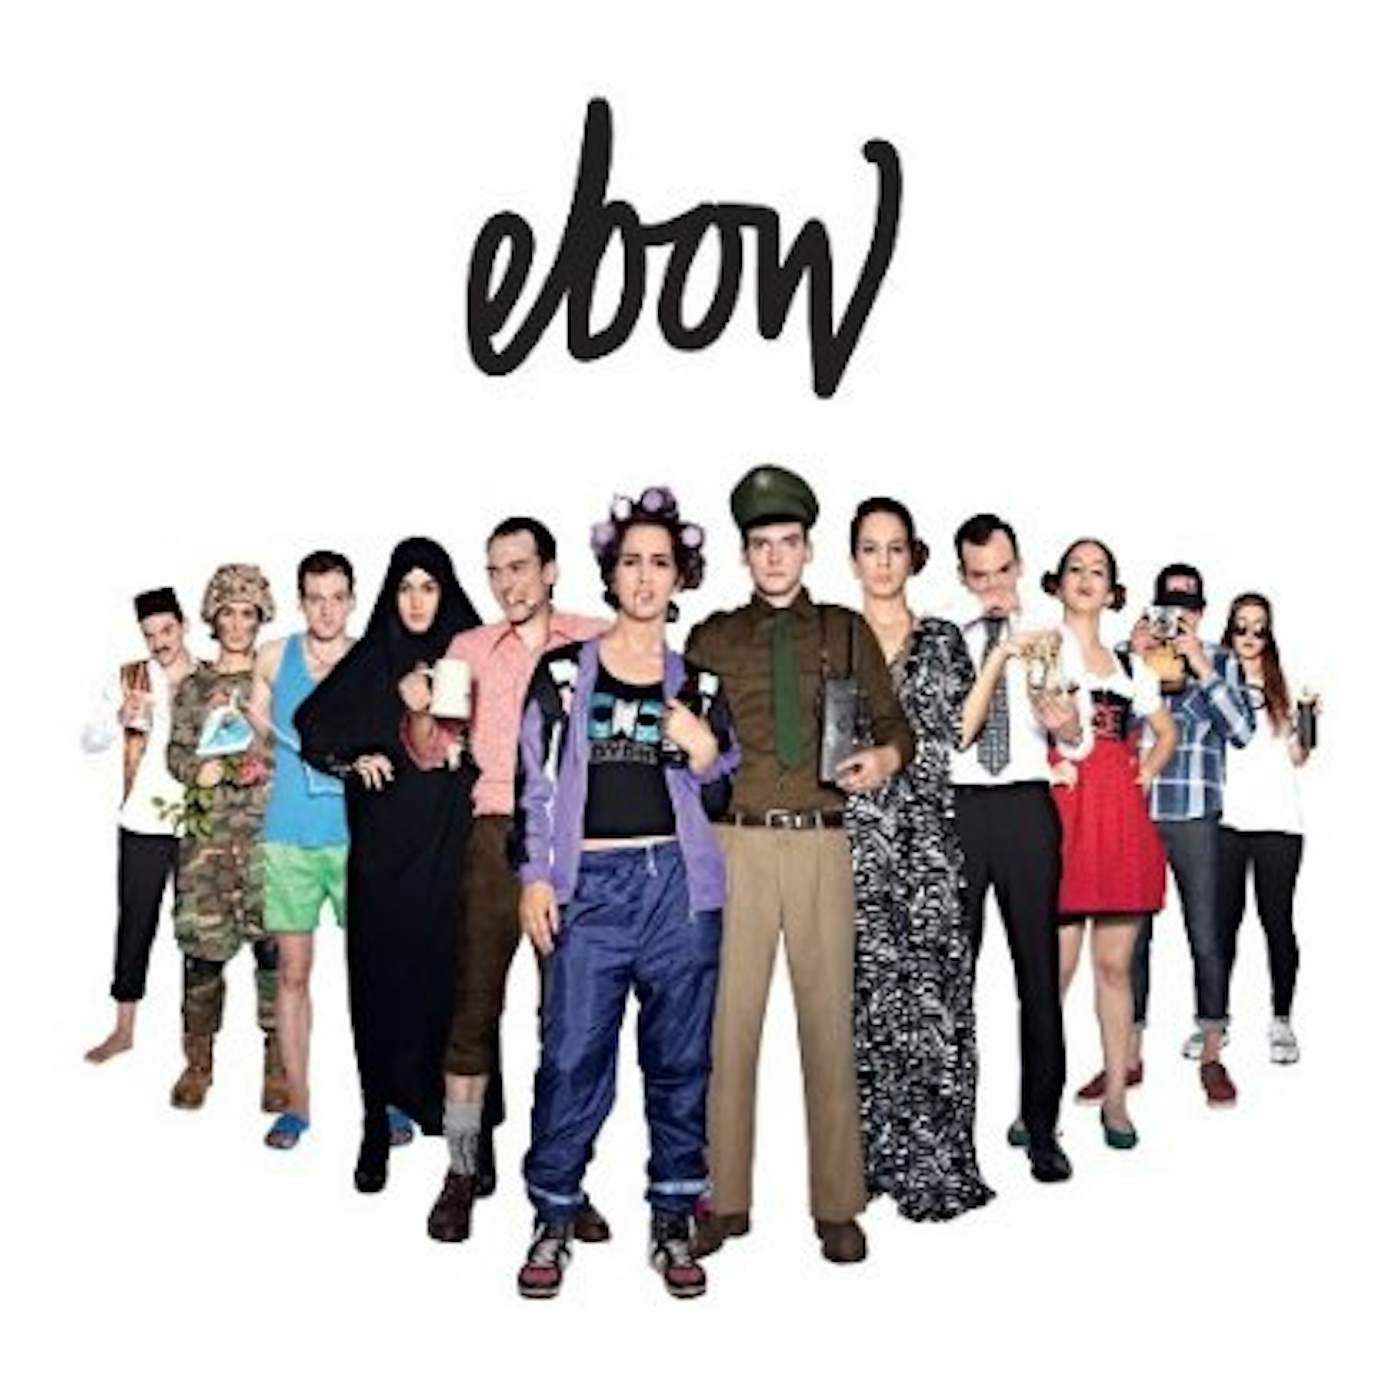 EBOW CD